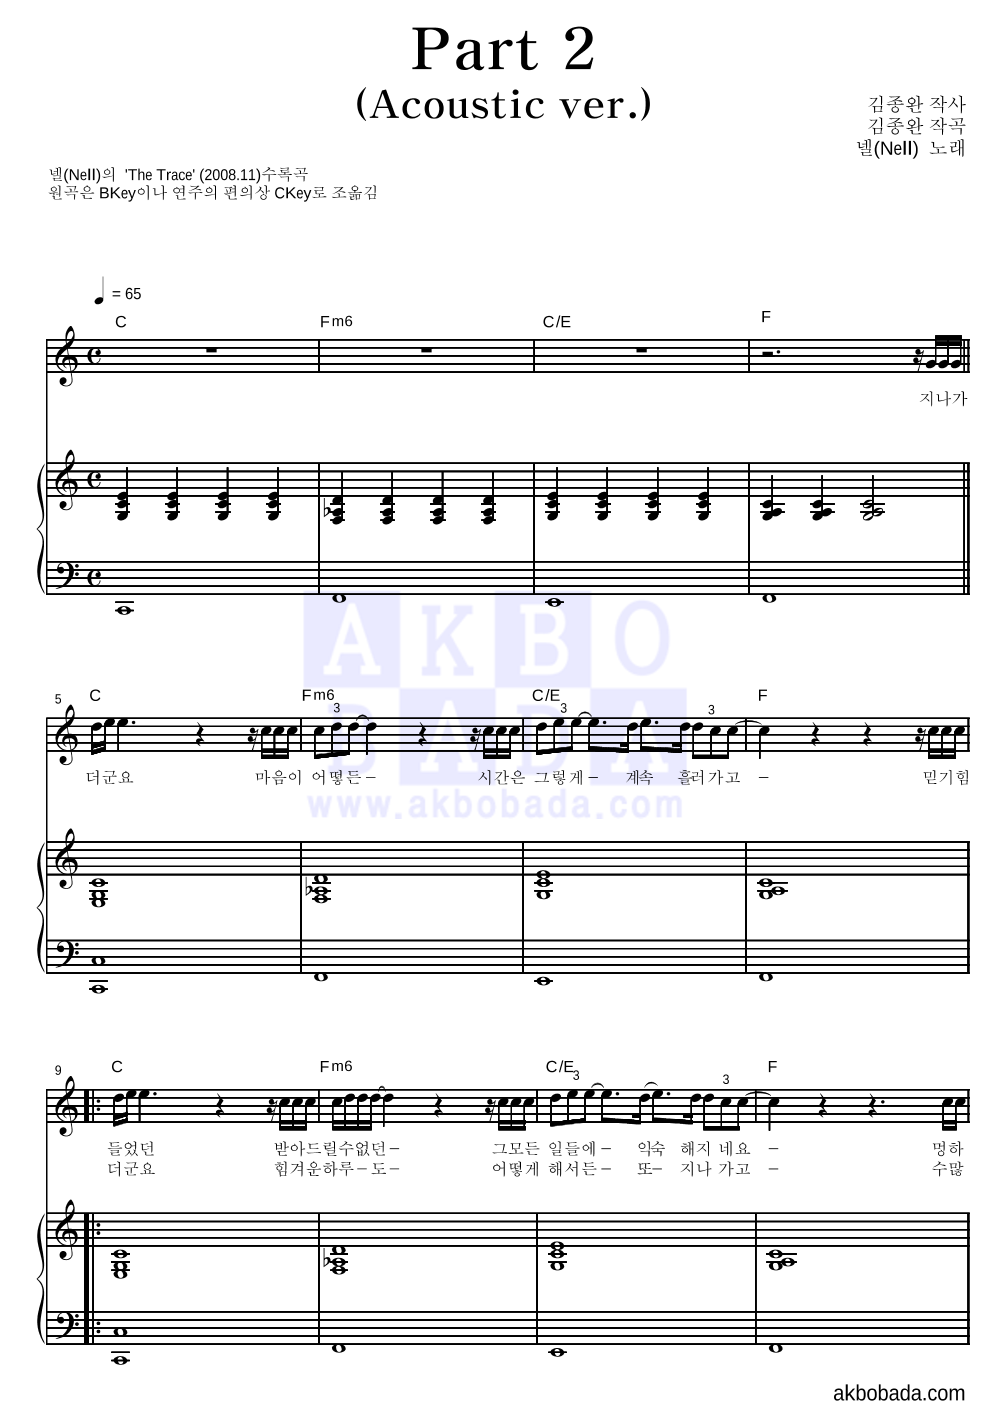 넬(Nell) - Part 2 (Acoustic Ver.) 피아노 3단 악보 